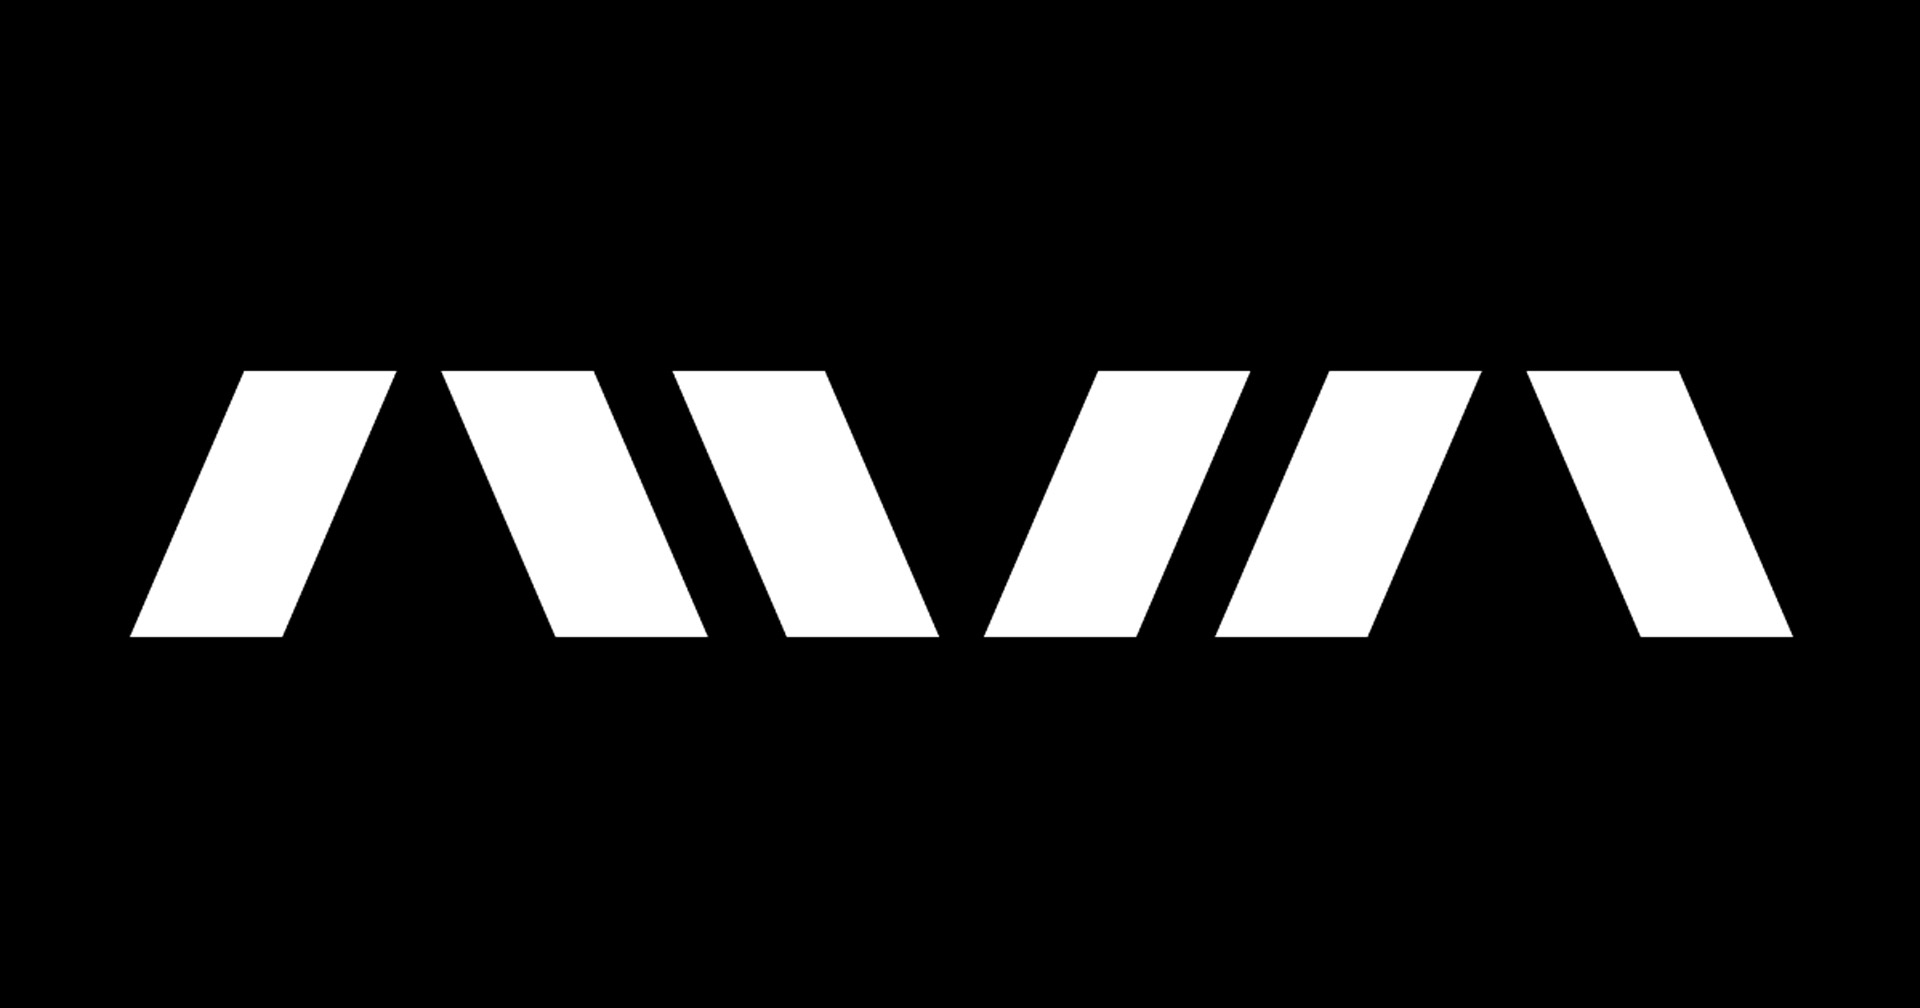 LINE NEXT เปิดตัว “AVA” แพลตฟอร์ม NFT เพื่อความบันเทิง